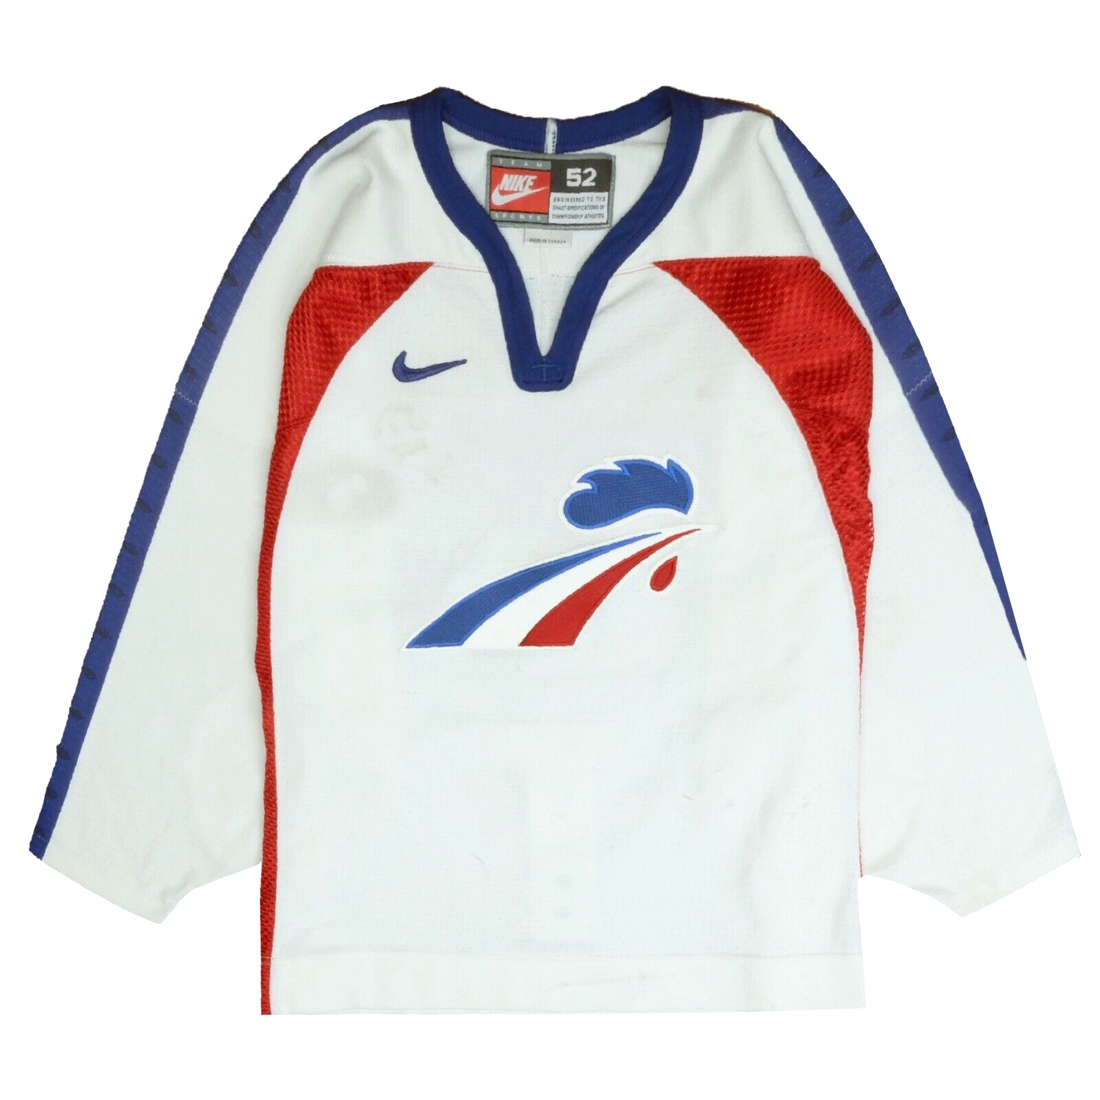 IIHF France home hockey jersey, RicLaf